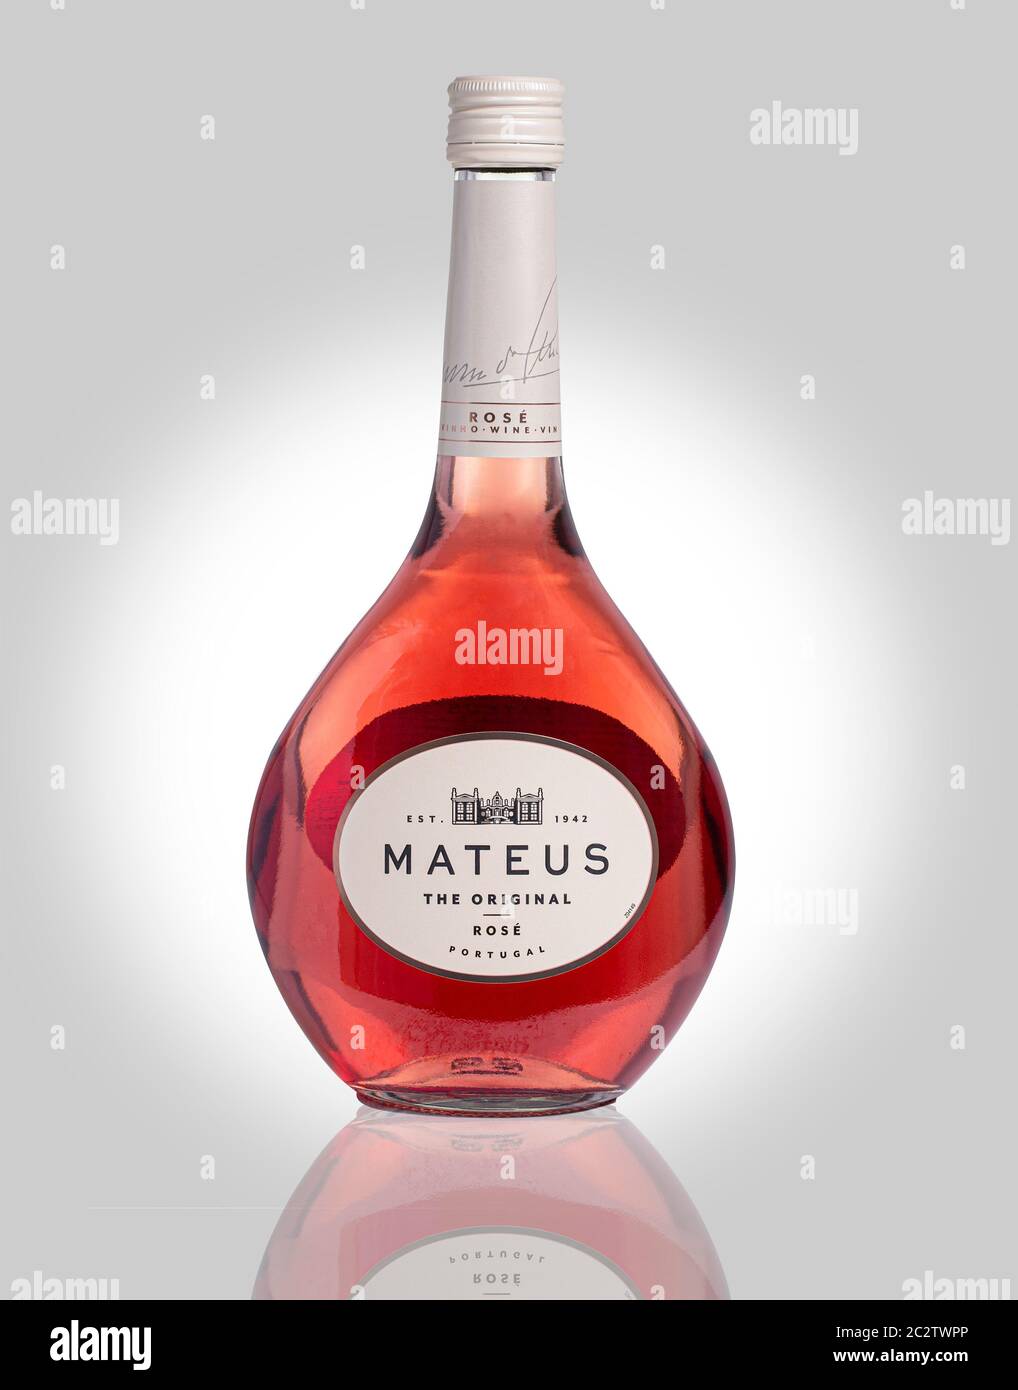 SWINDON, UK - 18. JUNI 2020: Flasche Mateus Roséwein auf weißem Grund Stockfoto